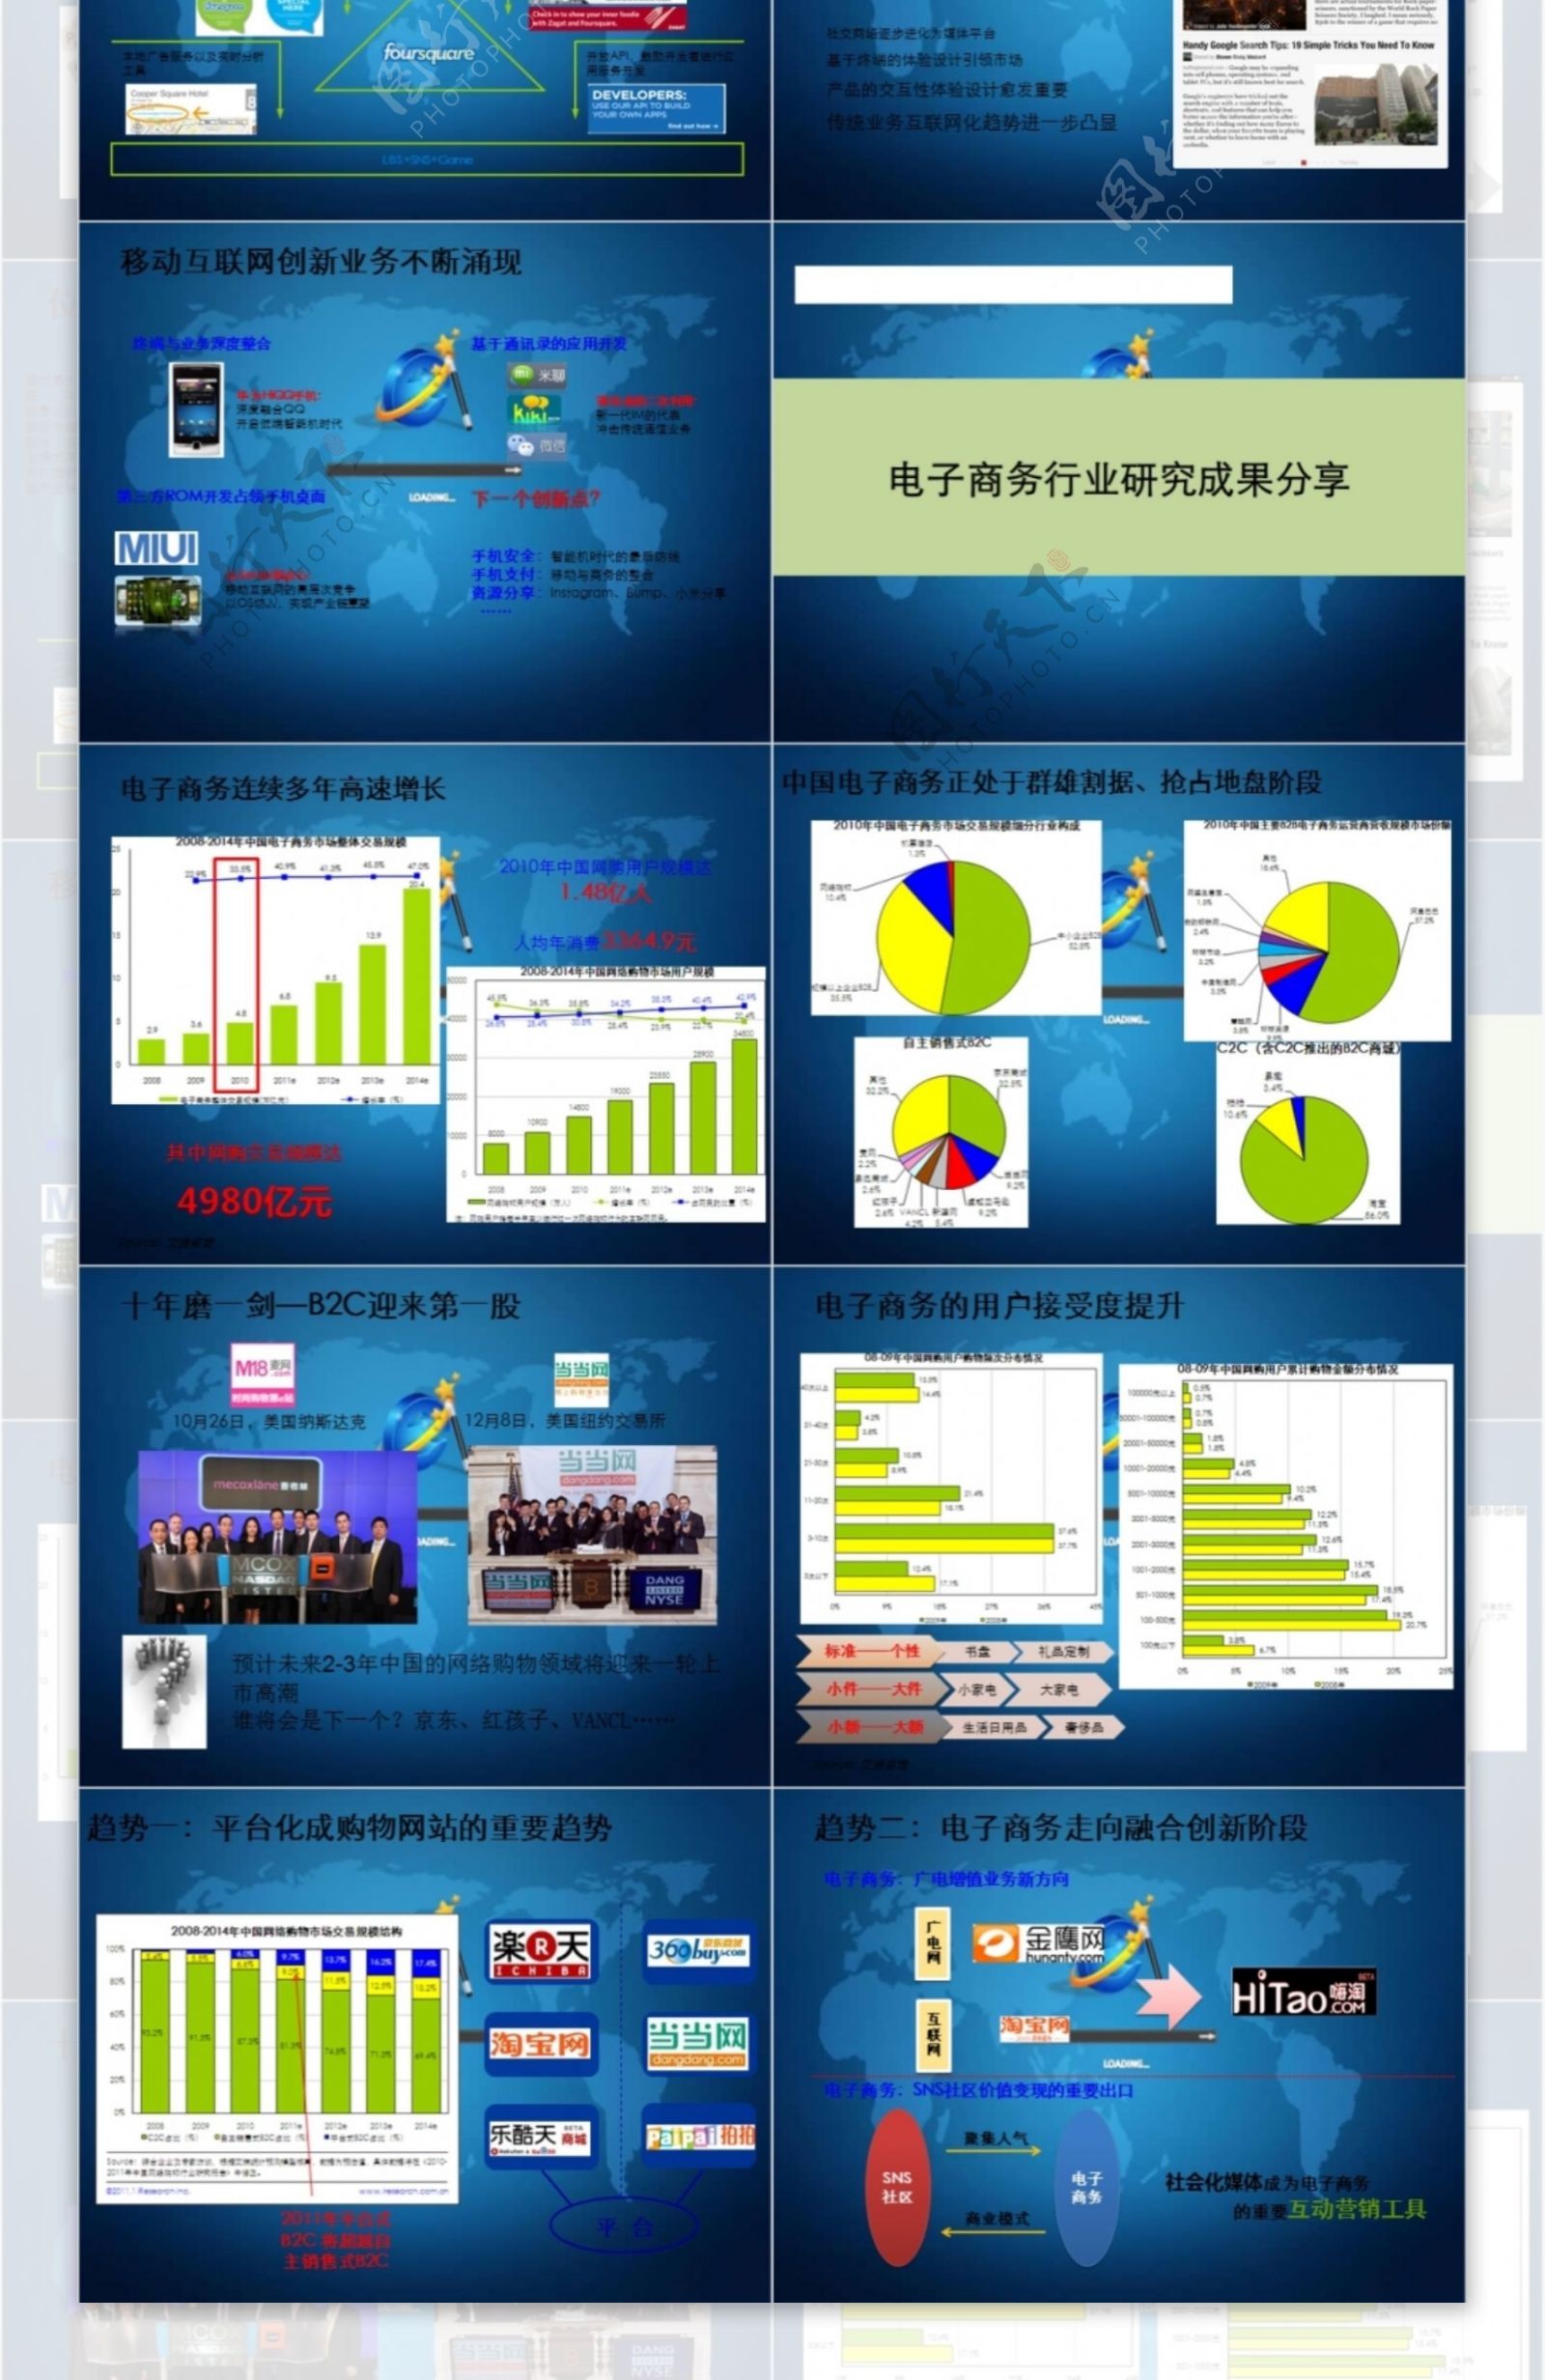 2107年中国互联网行业发展解析